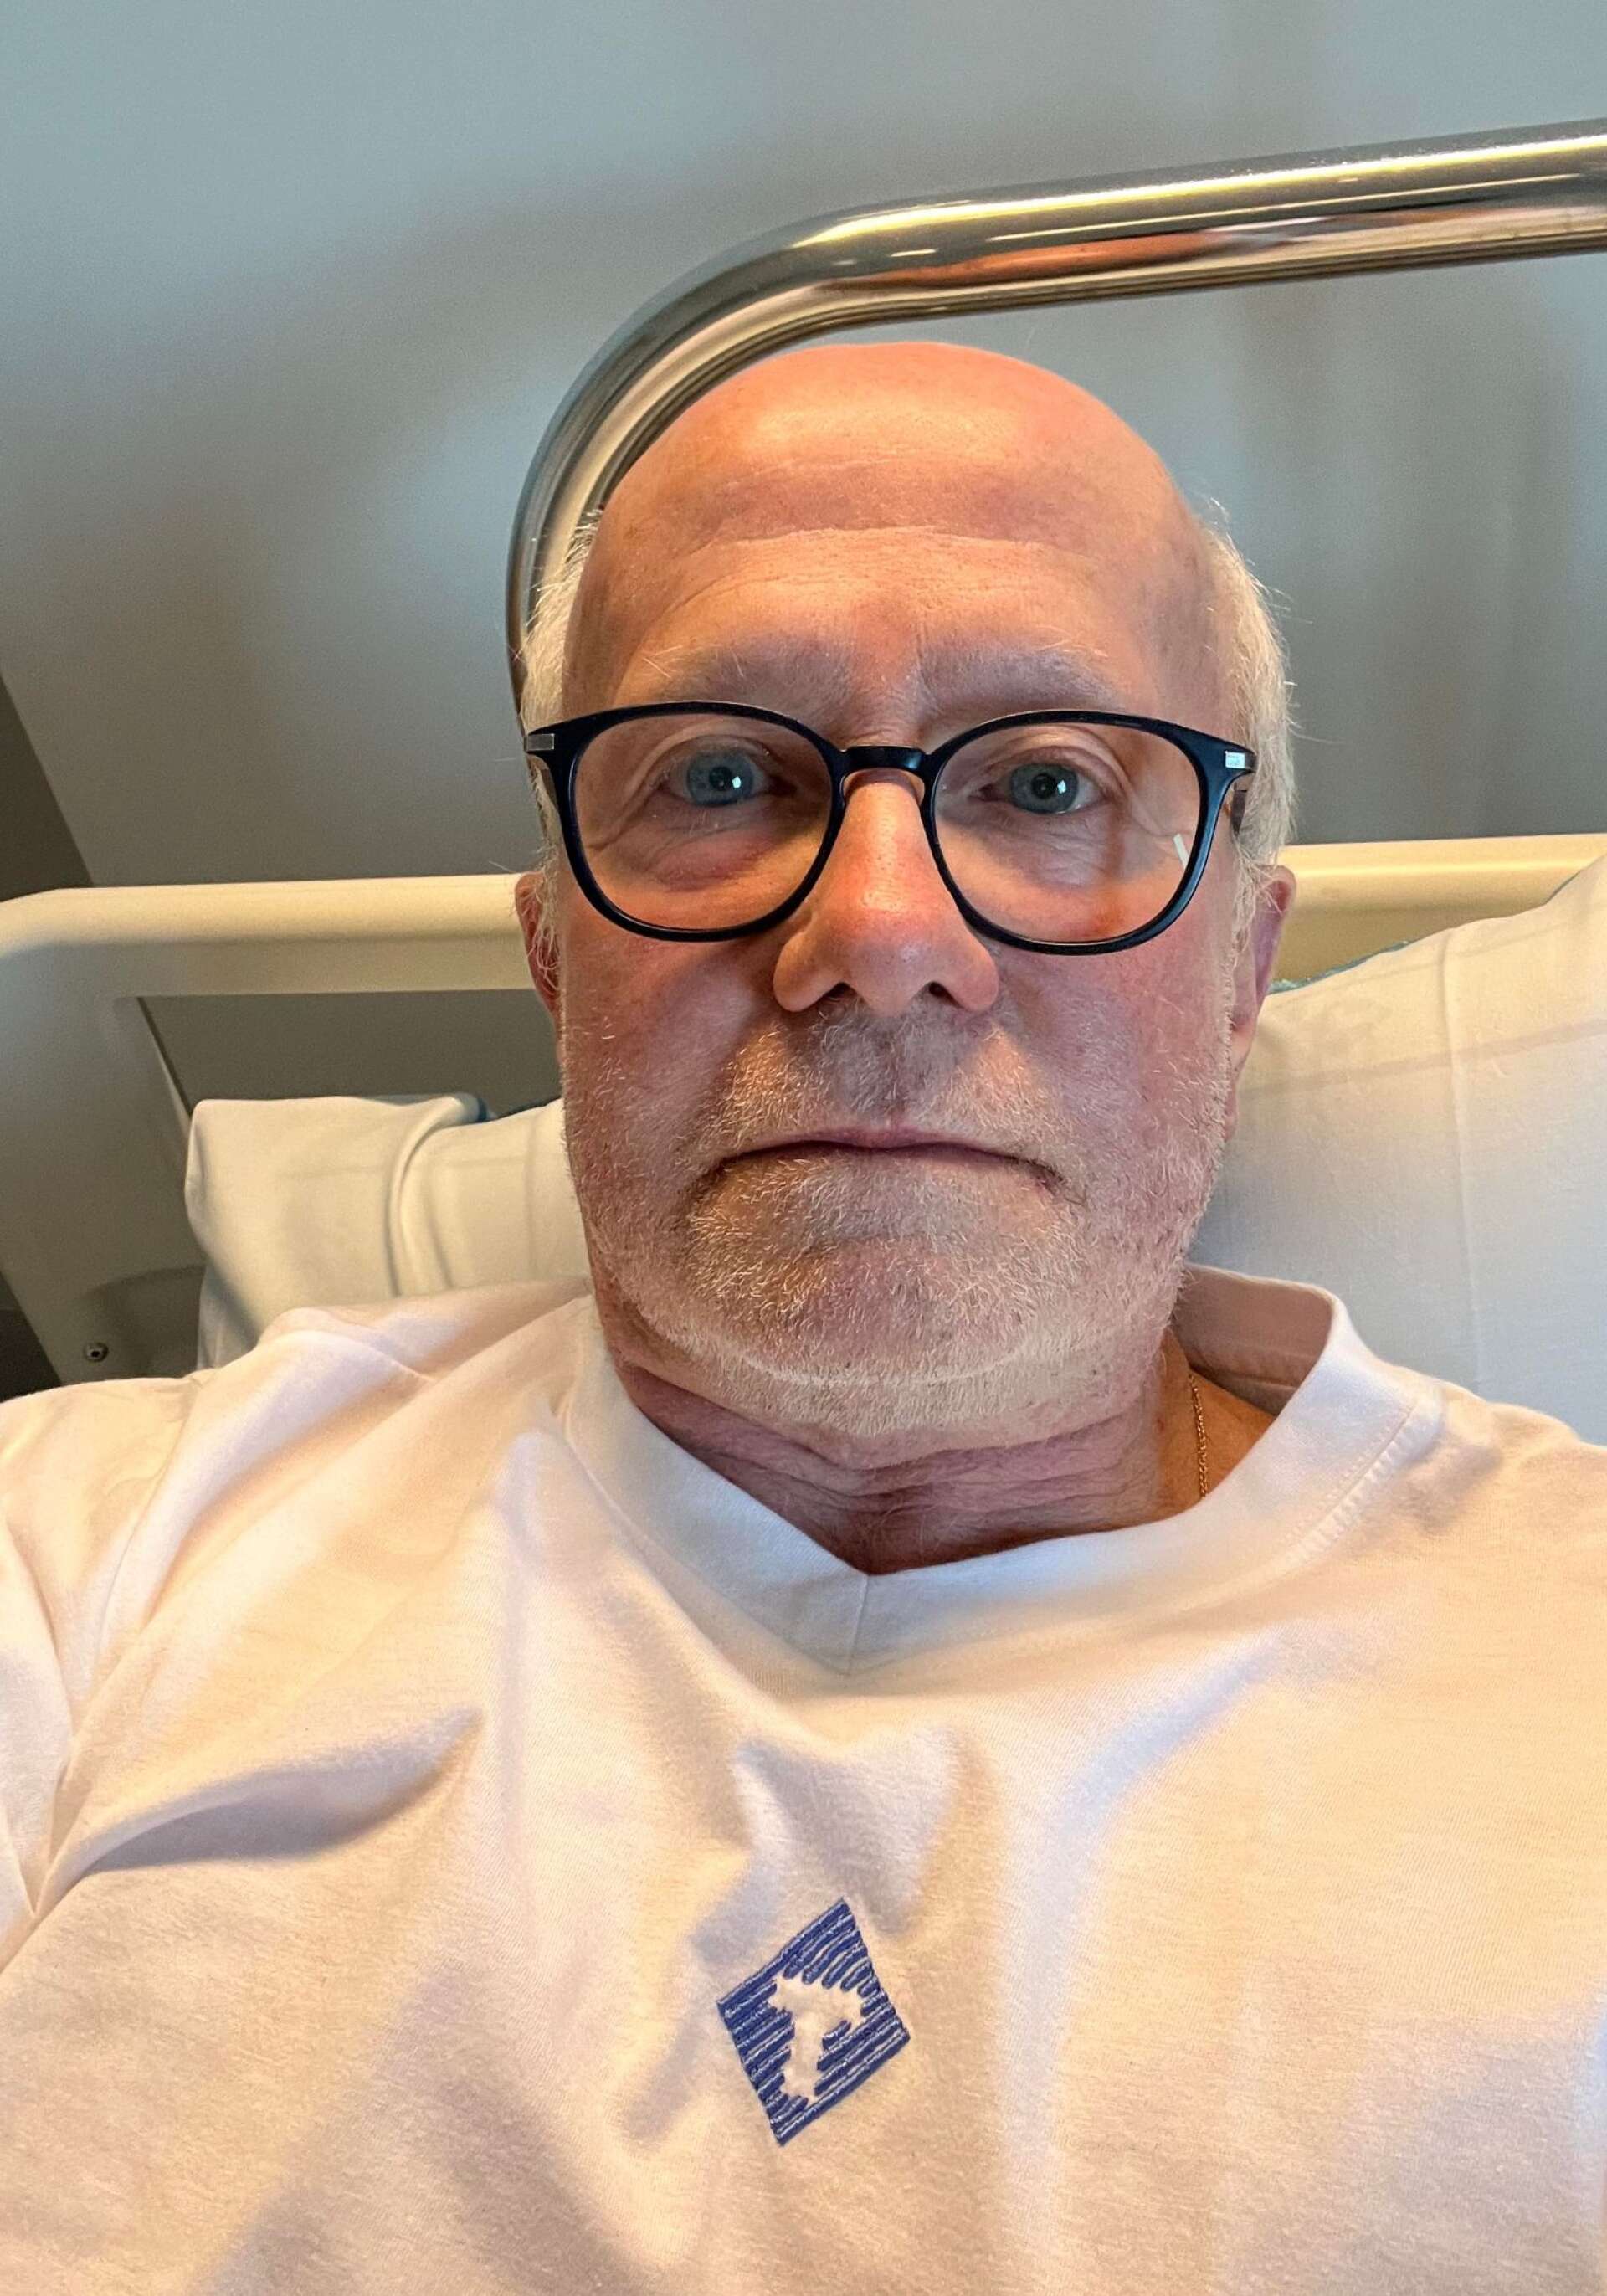 Öivind Åsberg la ut en selfie från sjukhuset och bad om ursäkt för att han missade att hålla talet till våren.